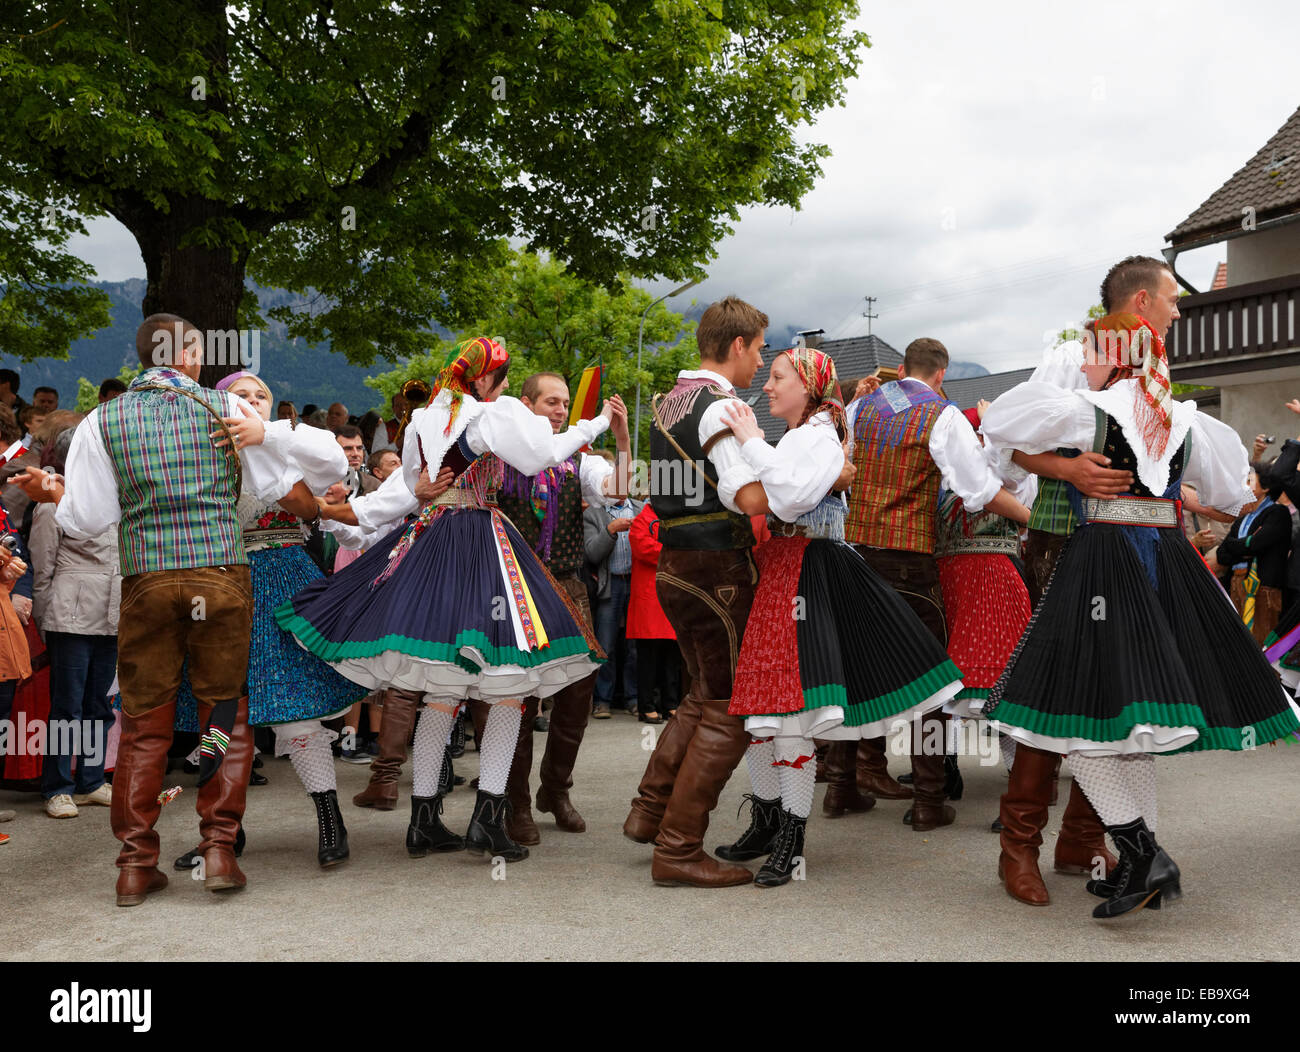 Männer und Frauen in traditionellen Kostümen vom Gailtaler Tal Tanz, Tanz Unter der Linde Tanz, Kufenstechen festival Stockfoto